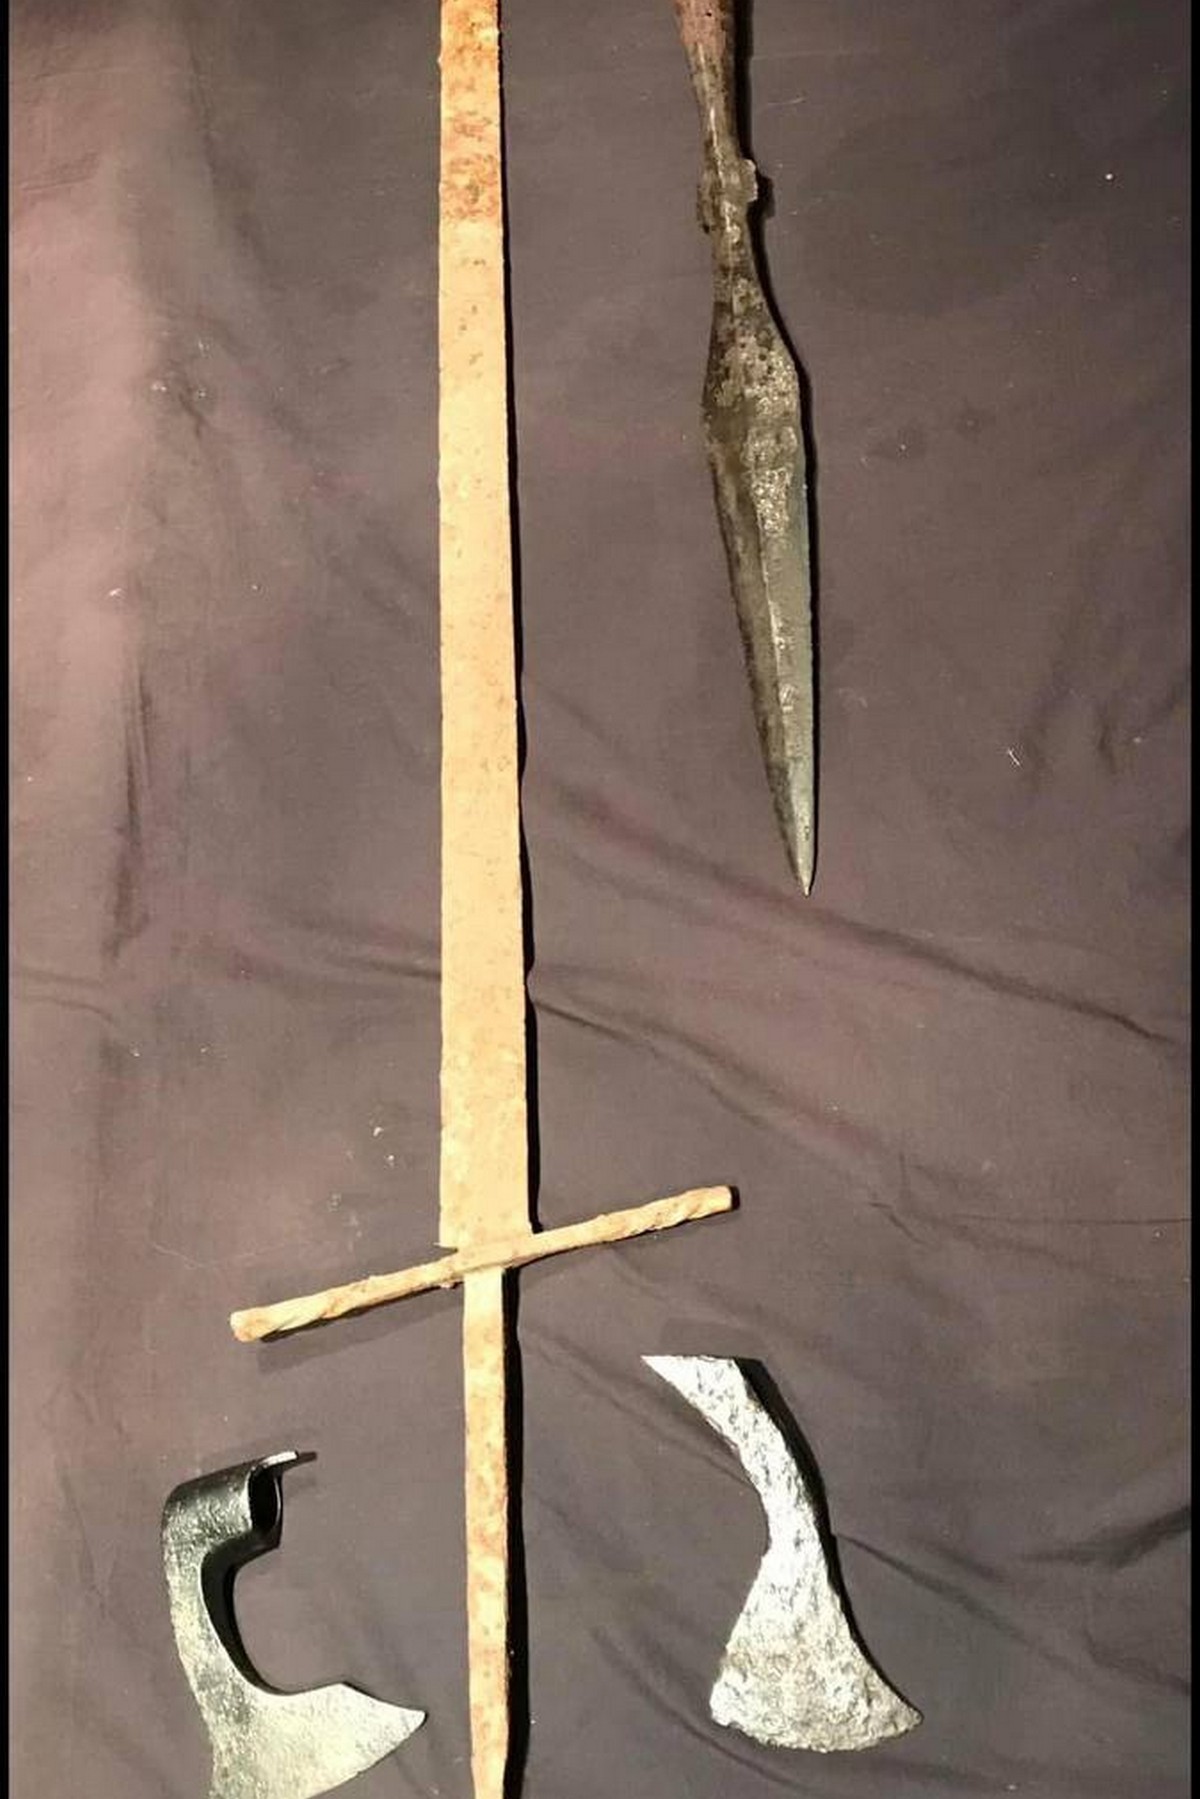 Як виглядає меч цвайхандер, знайдений на заході України – двометрова зброя 13-16 століть